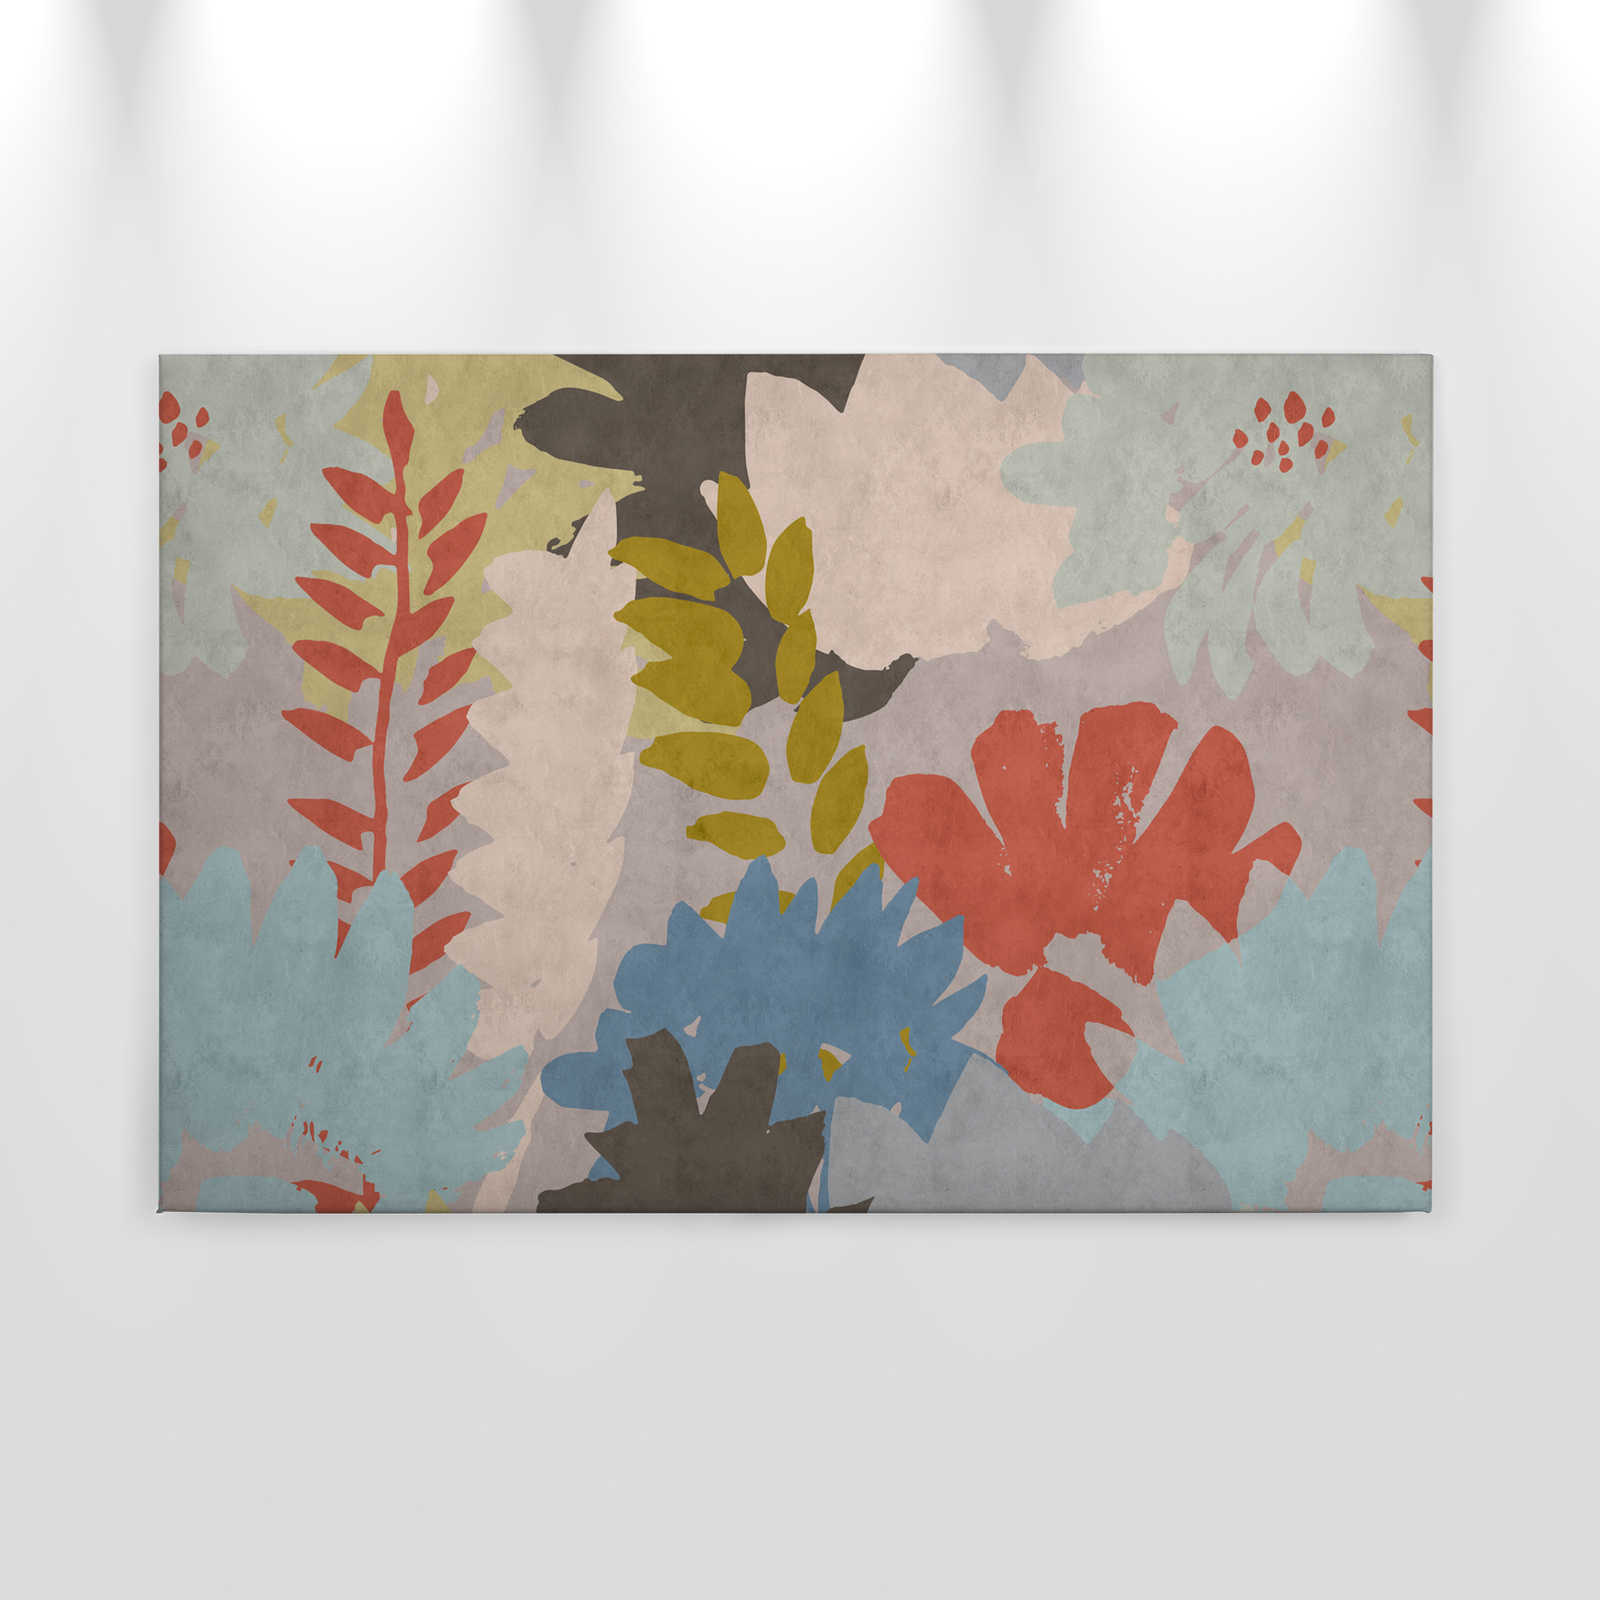             Floral Collage 3 - Abstraktes Leinwandbild in Löschpapier Struktur mit Blätter-Motiv – 0,90 m x 0,60 m
        